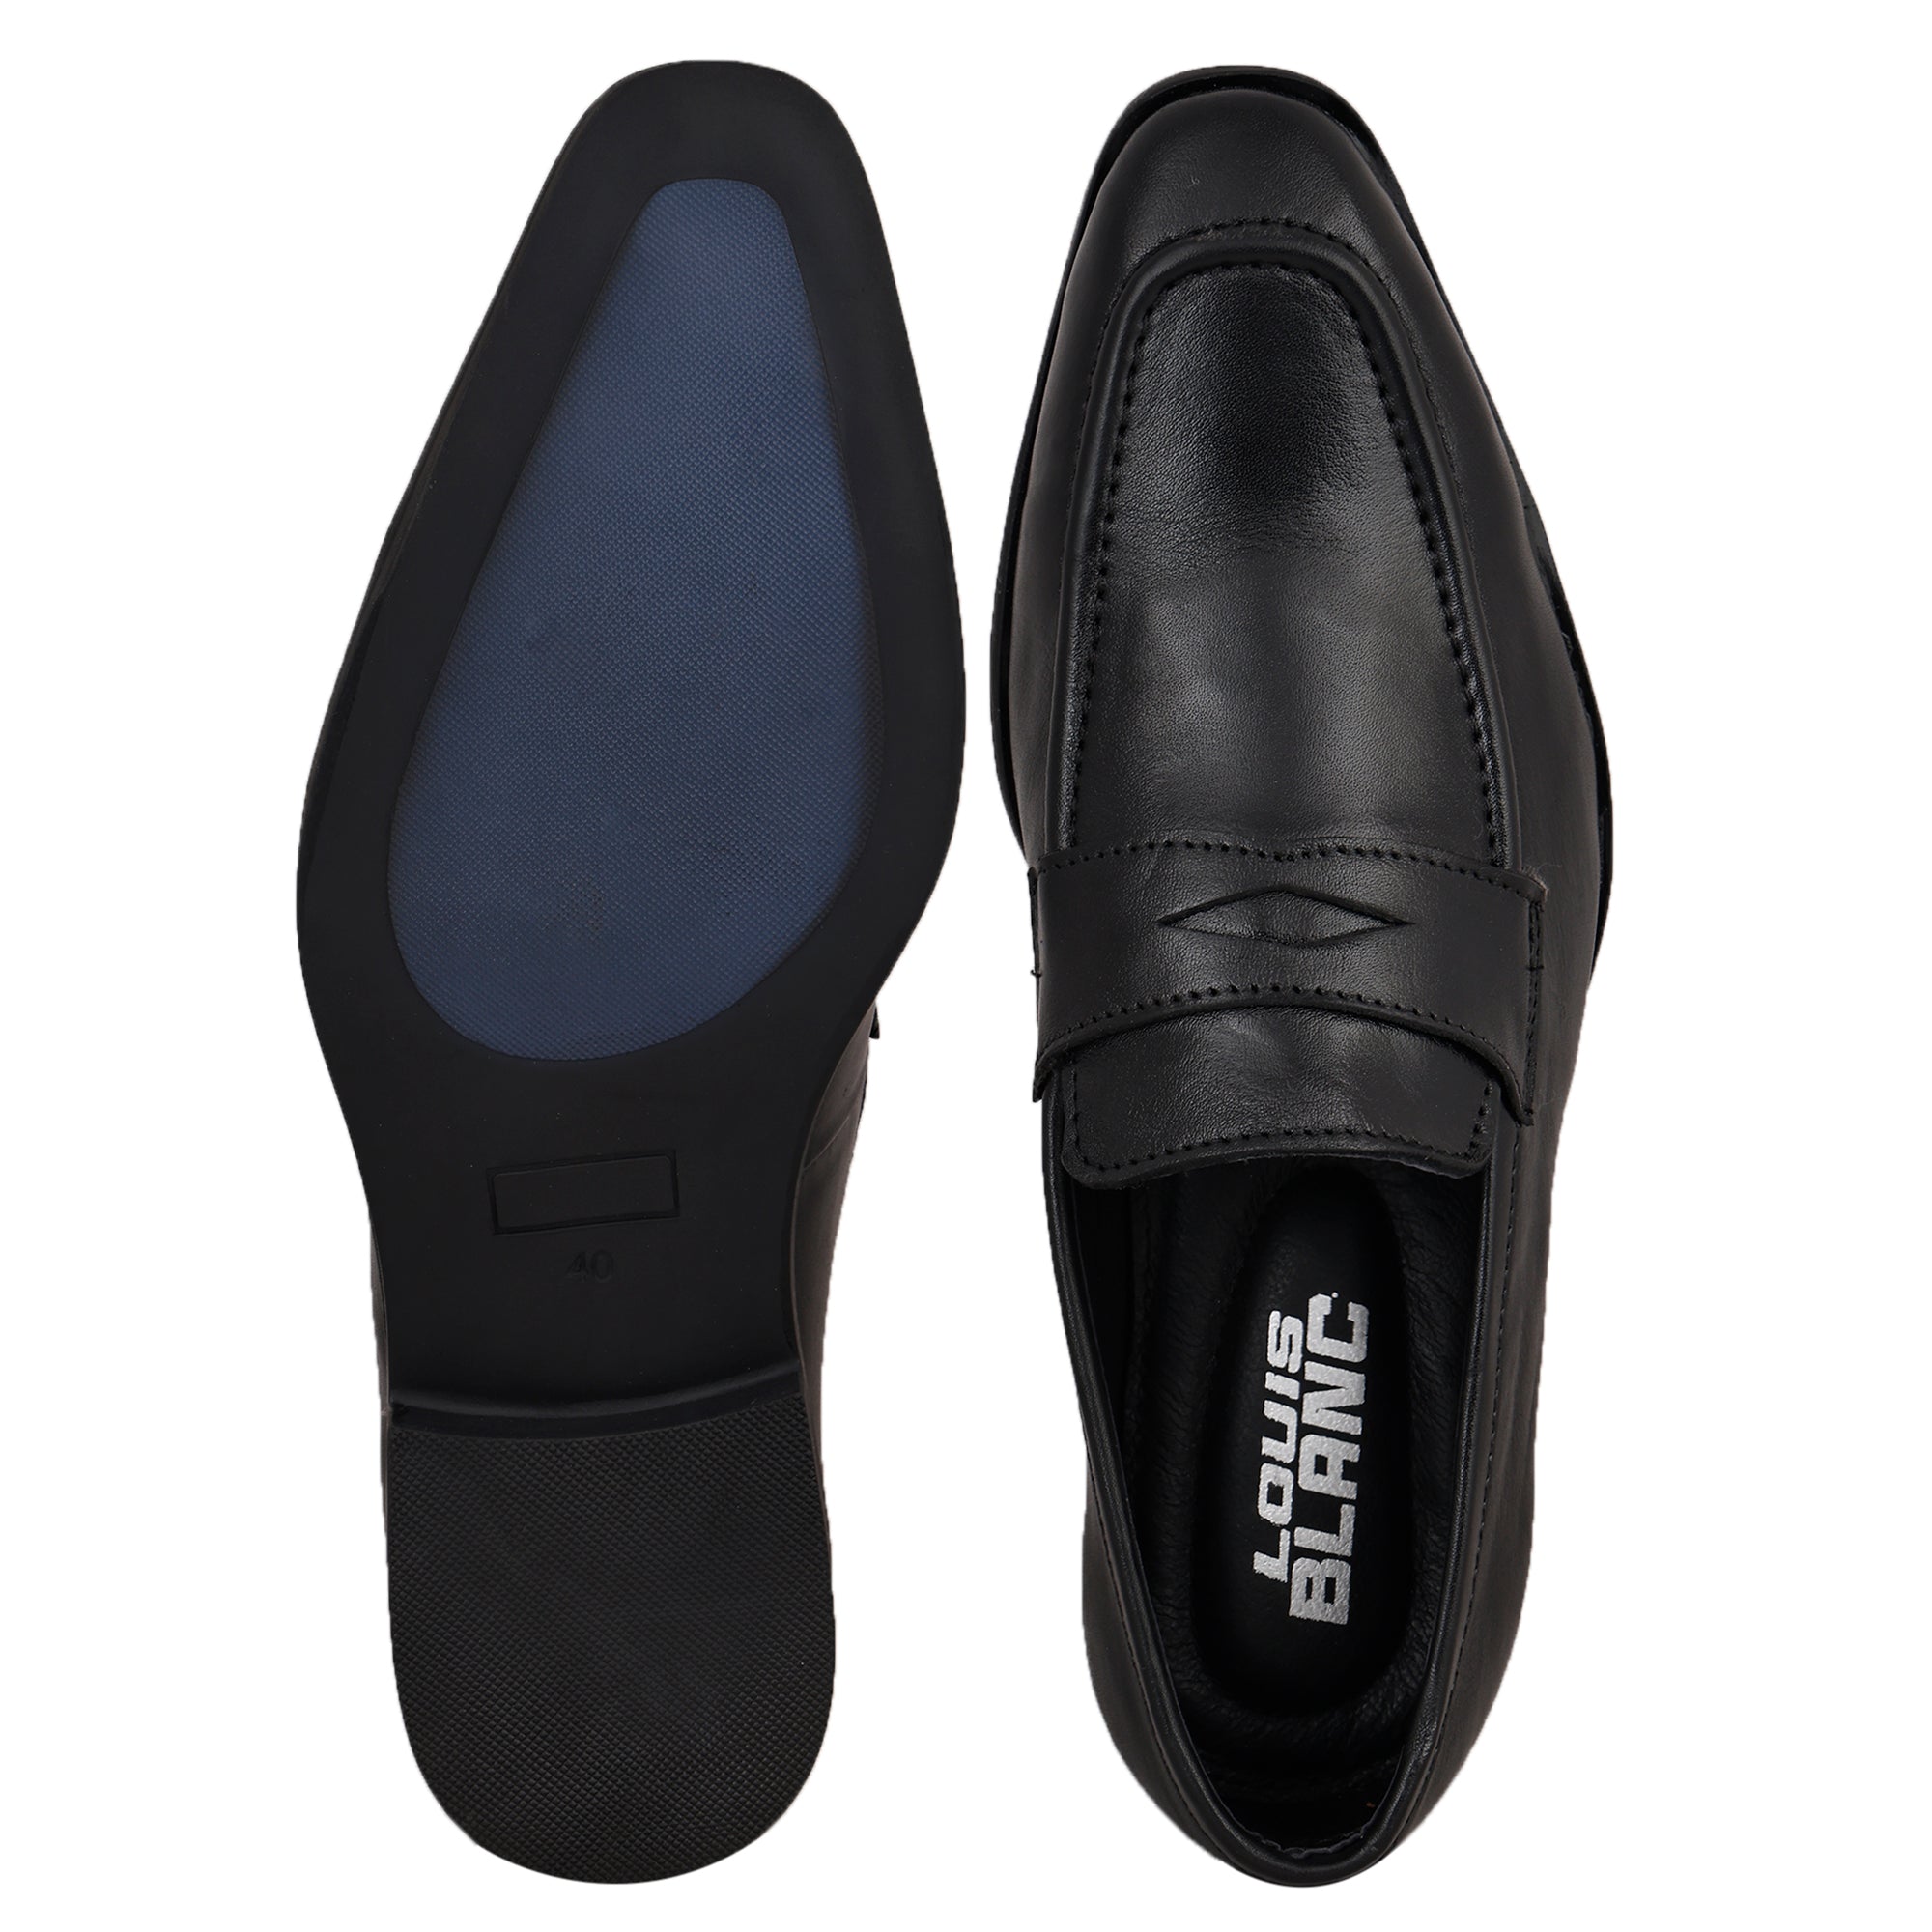 Jet Black Tassel Loafers Slip-on for Men ( LB 10 )